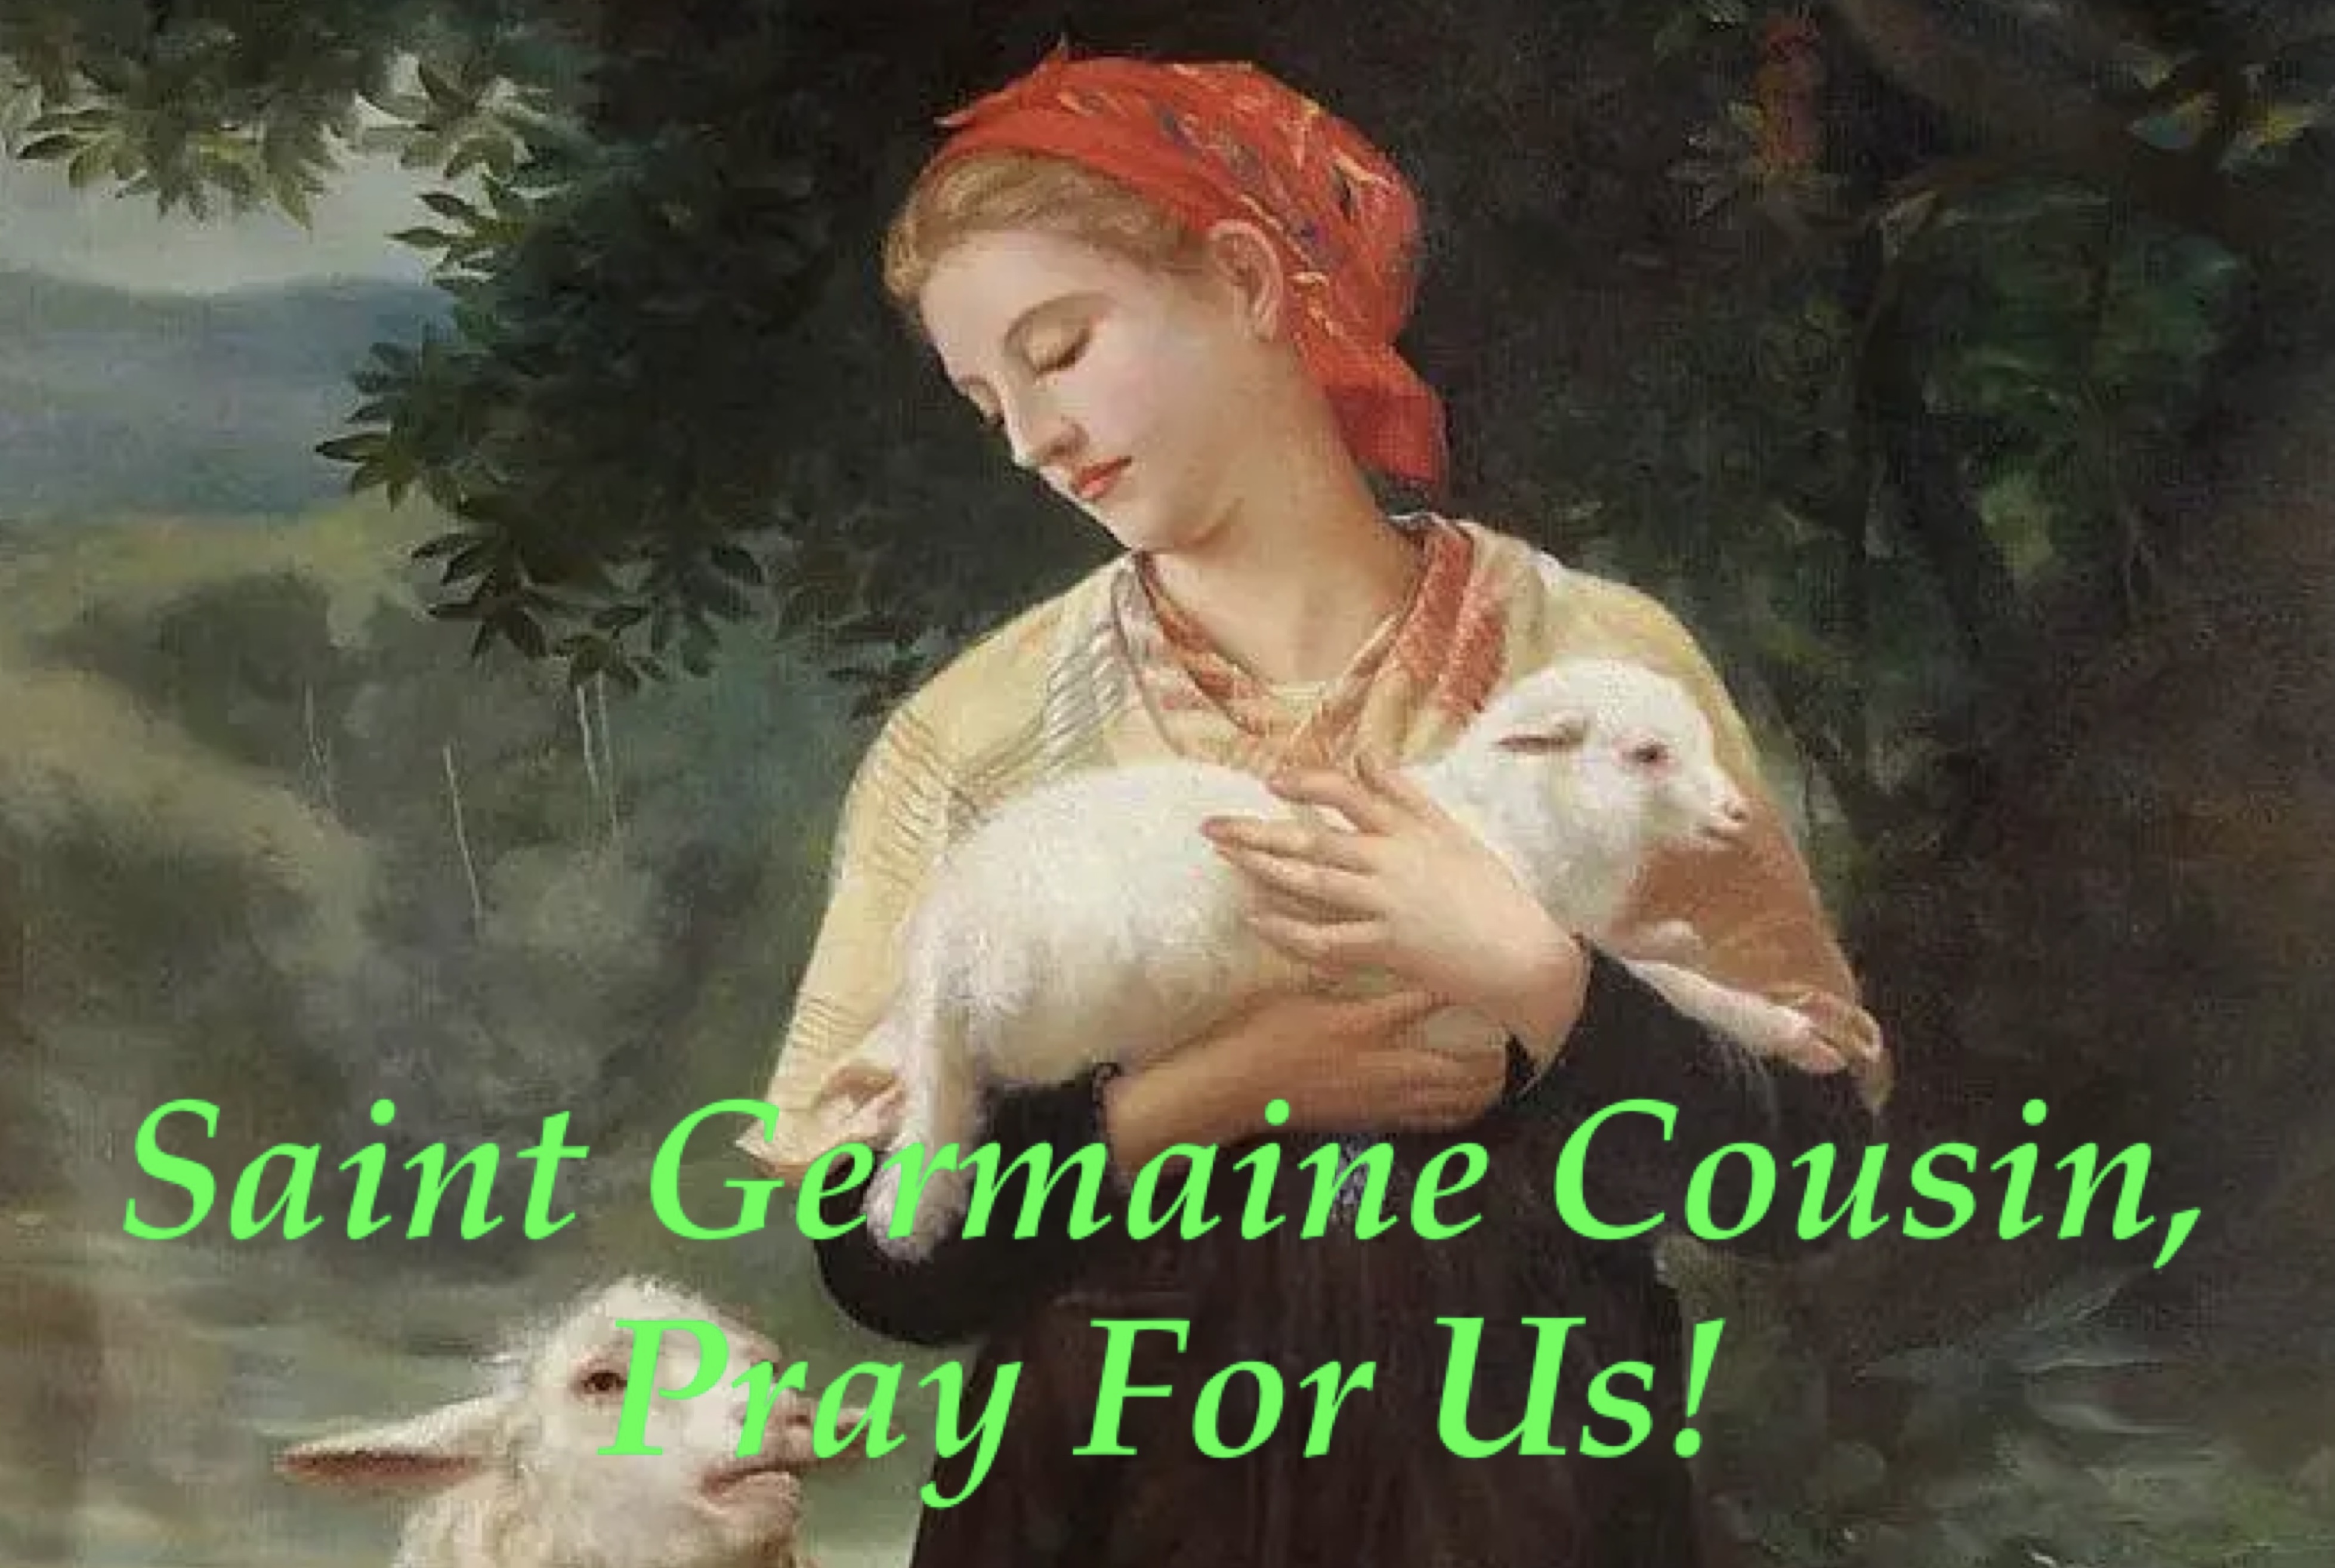 15th June - Saint Germaine Cousin